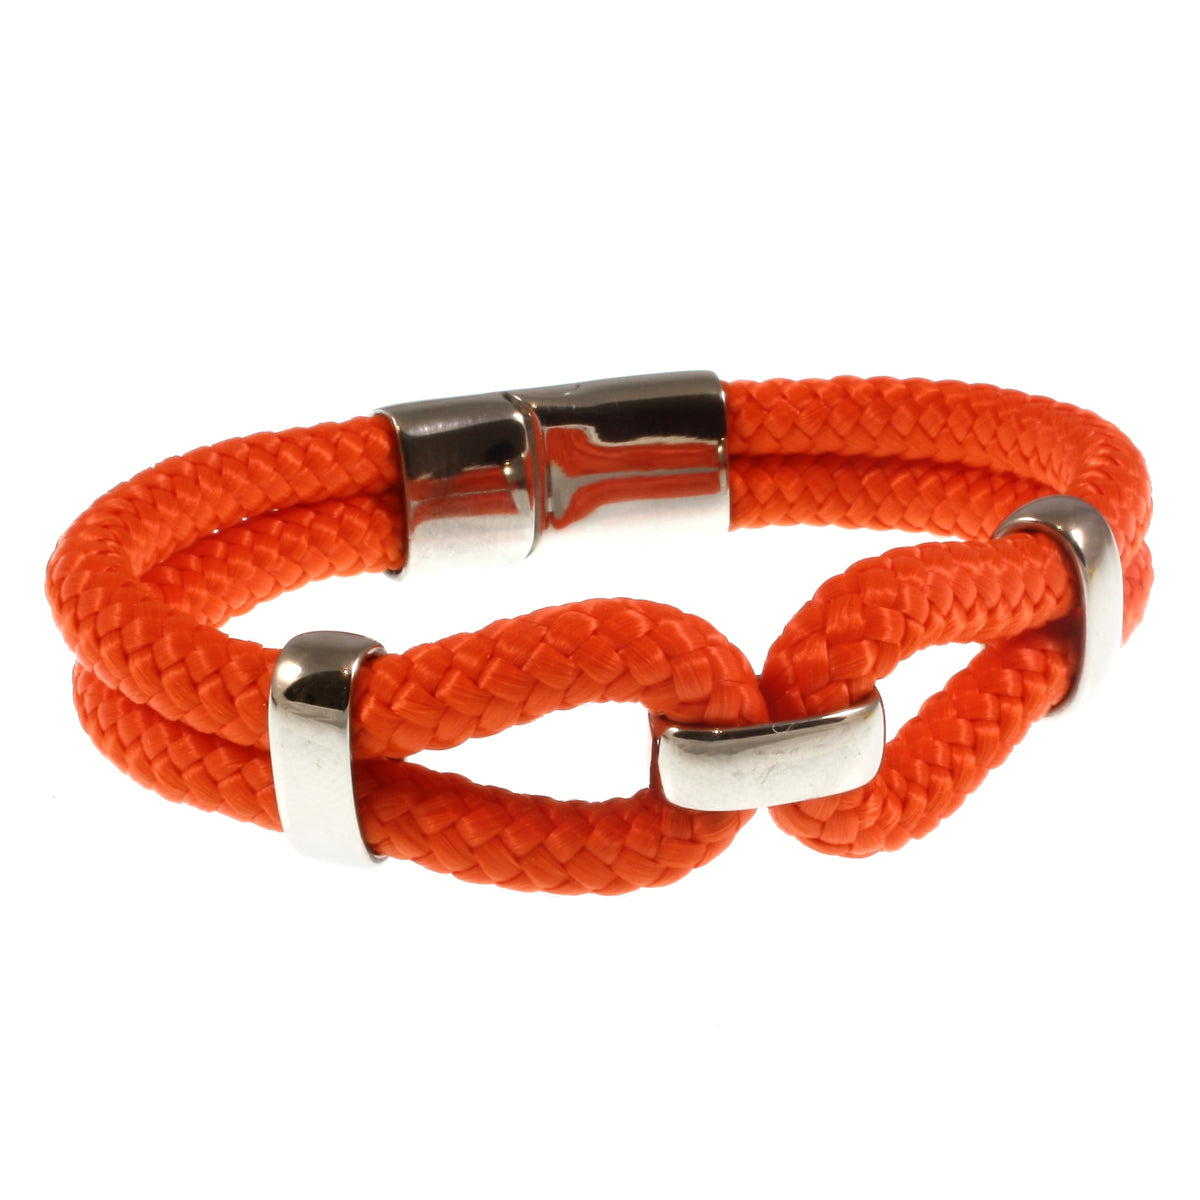 Damen-Segeltau-armband-roma-orange-geflochten-Edelstahlverschluss-vorn-wavepirate-shop-st